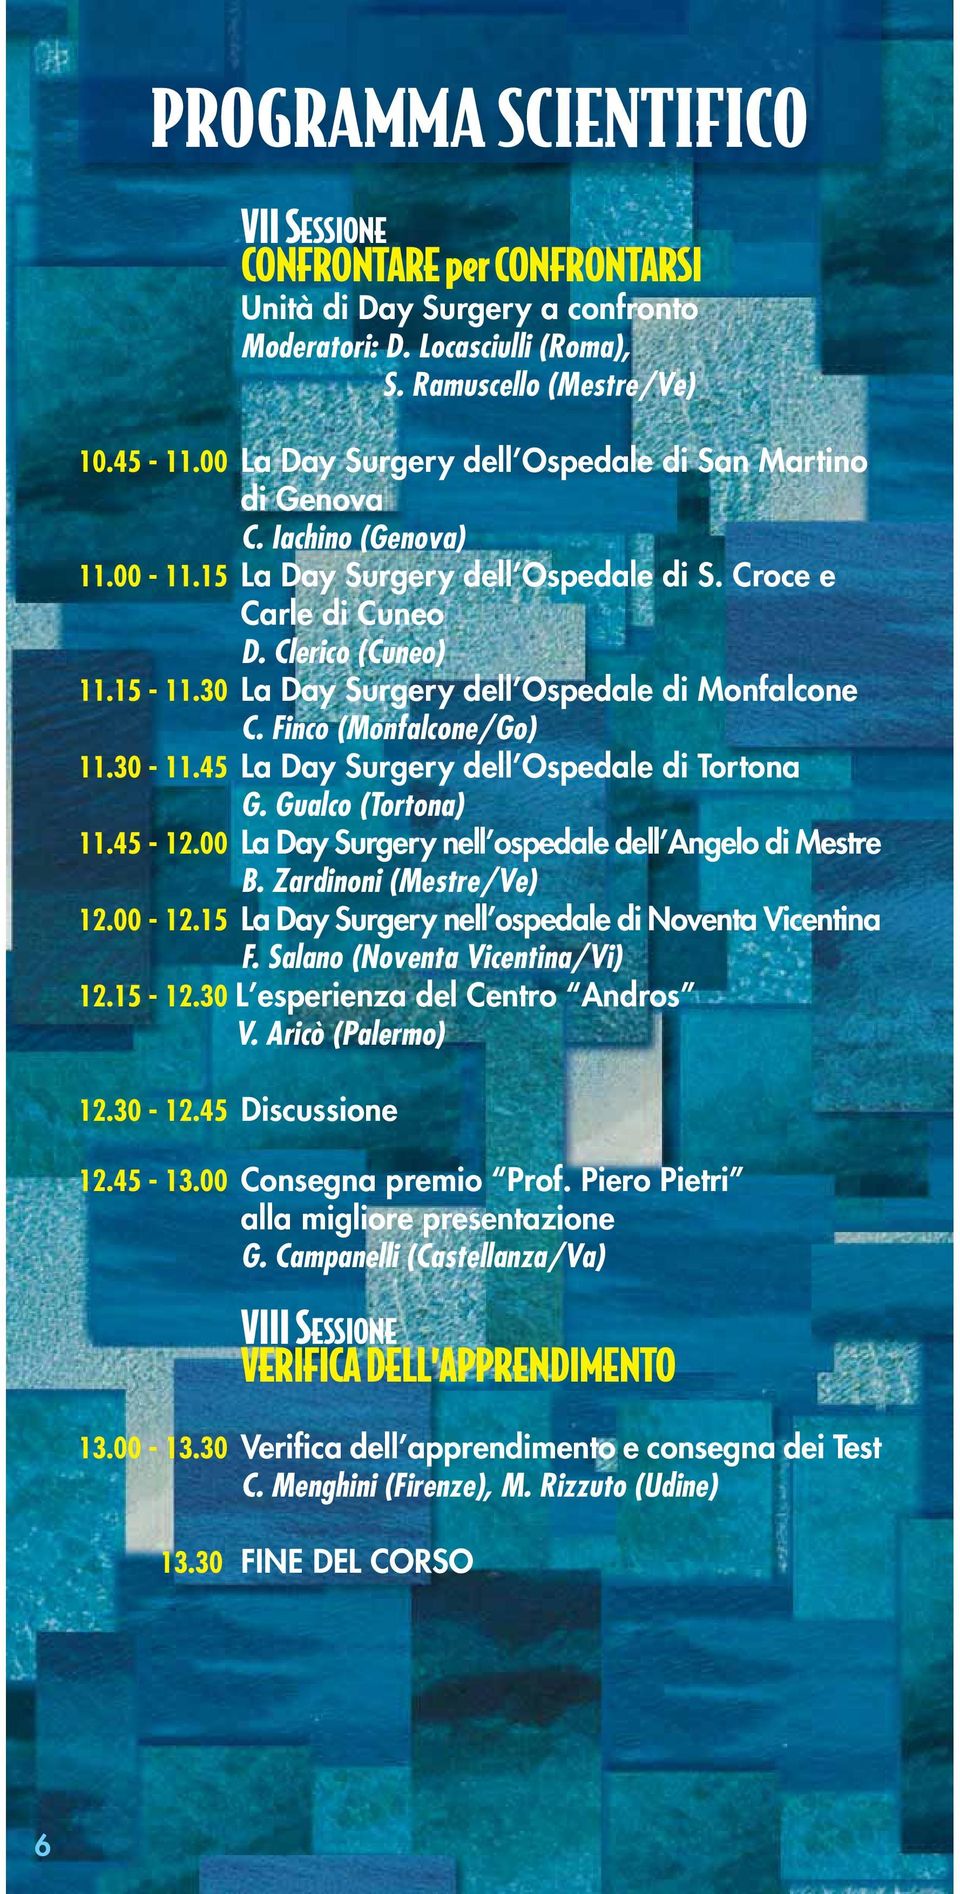 30 La Day Surgery dell Ospedale di Monfalcone C. Finco (Monfalcone/Go) 11.30-11.45 La Day Surgery dell Ospedale di Tortona G. Gualco (Tortona) 11.45-12.